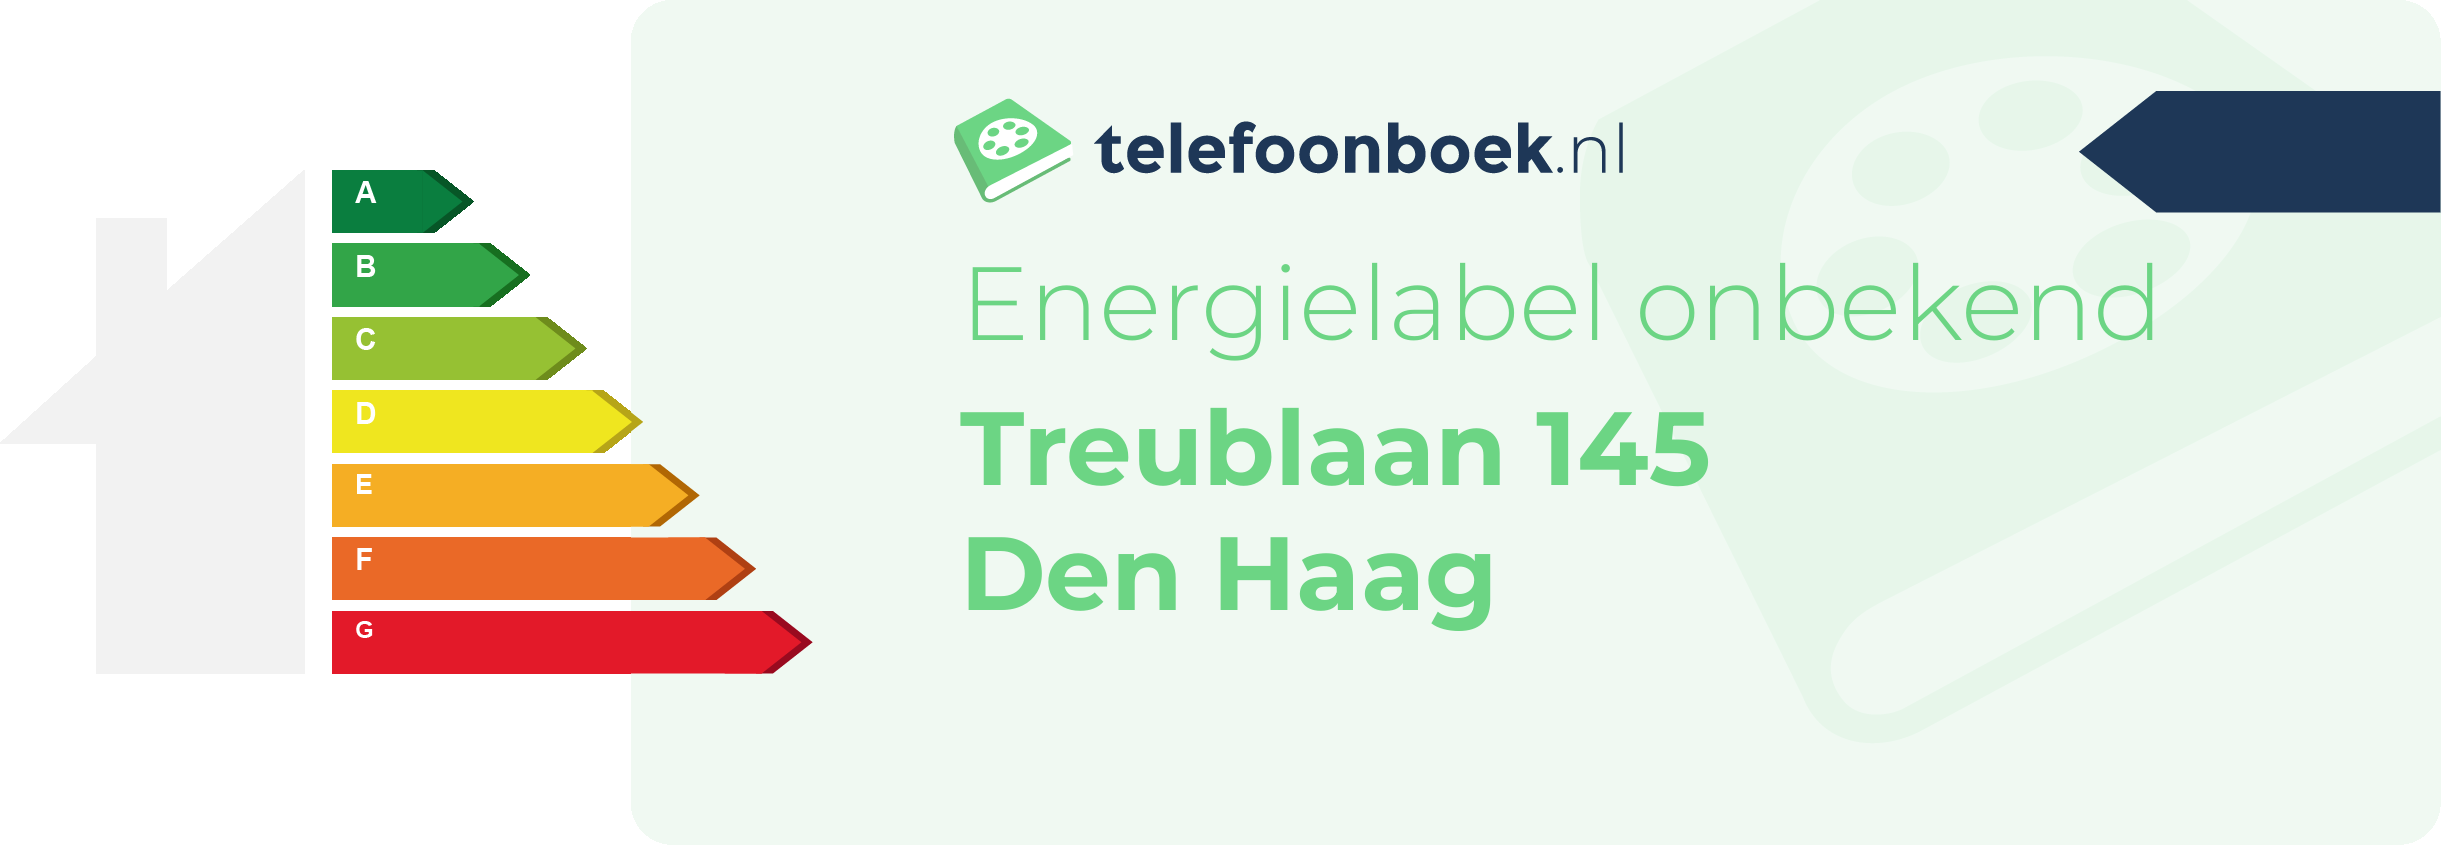 Energielabel Treublaan 145 Den Haag